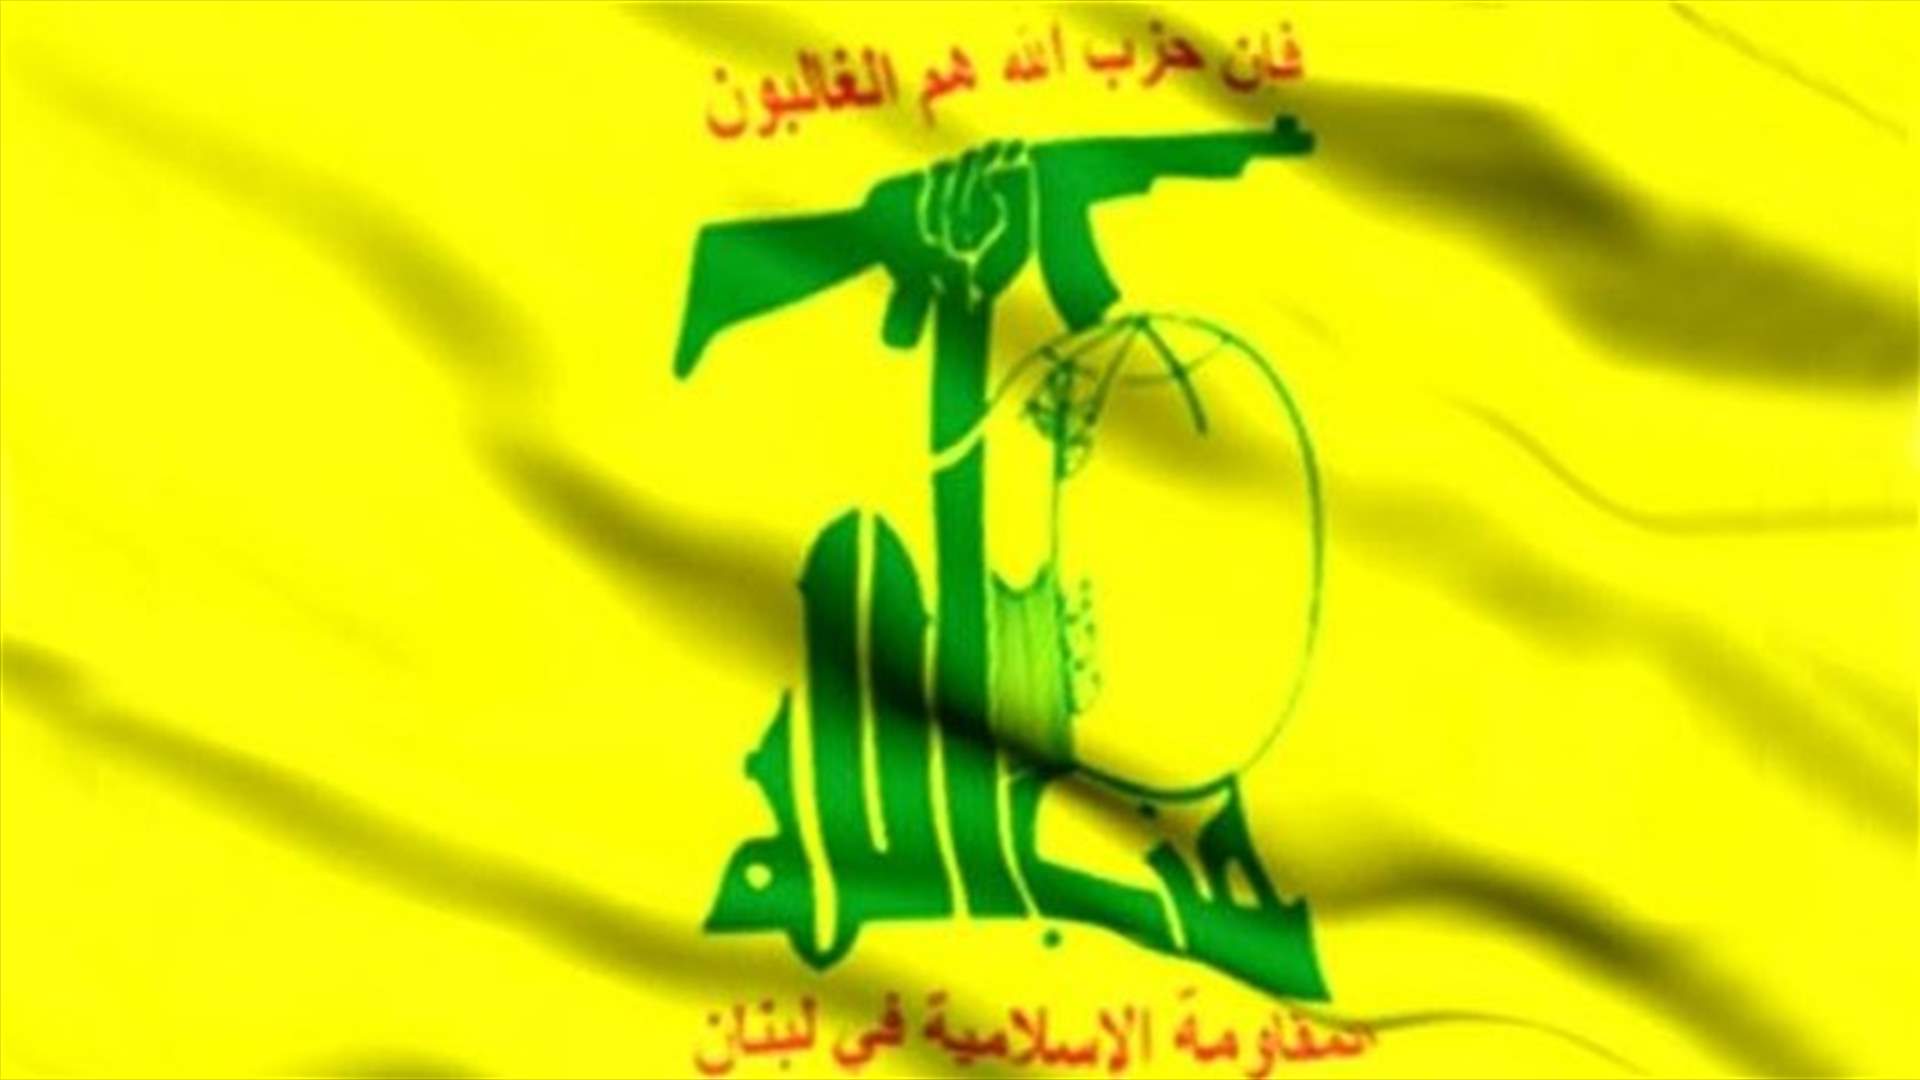 حزب الله دان تفجيرات العراق: حرب إجرامية تستهدف إبادة البشر والحجر